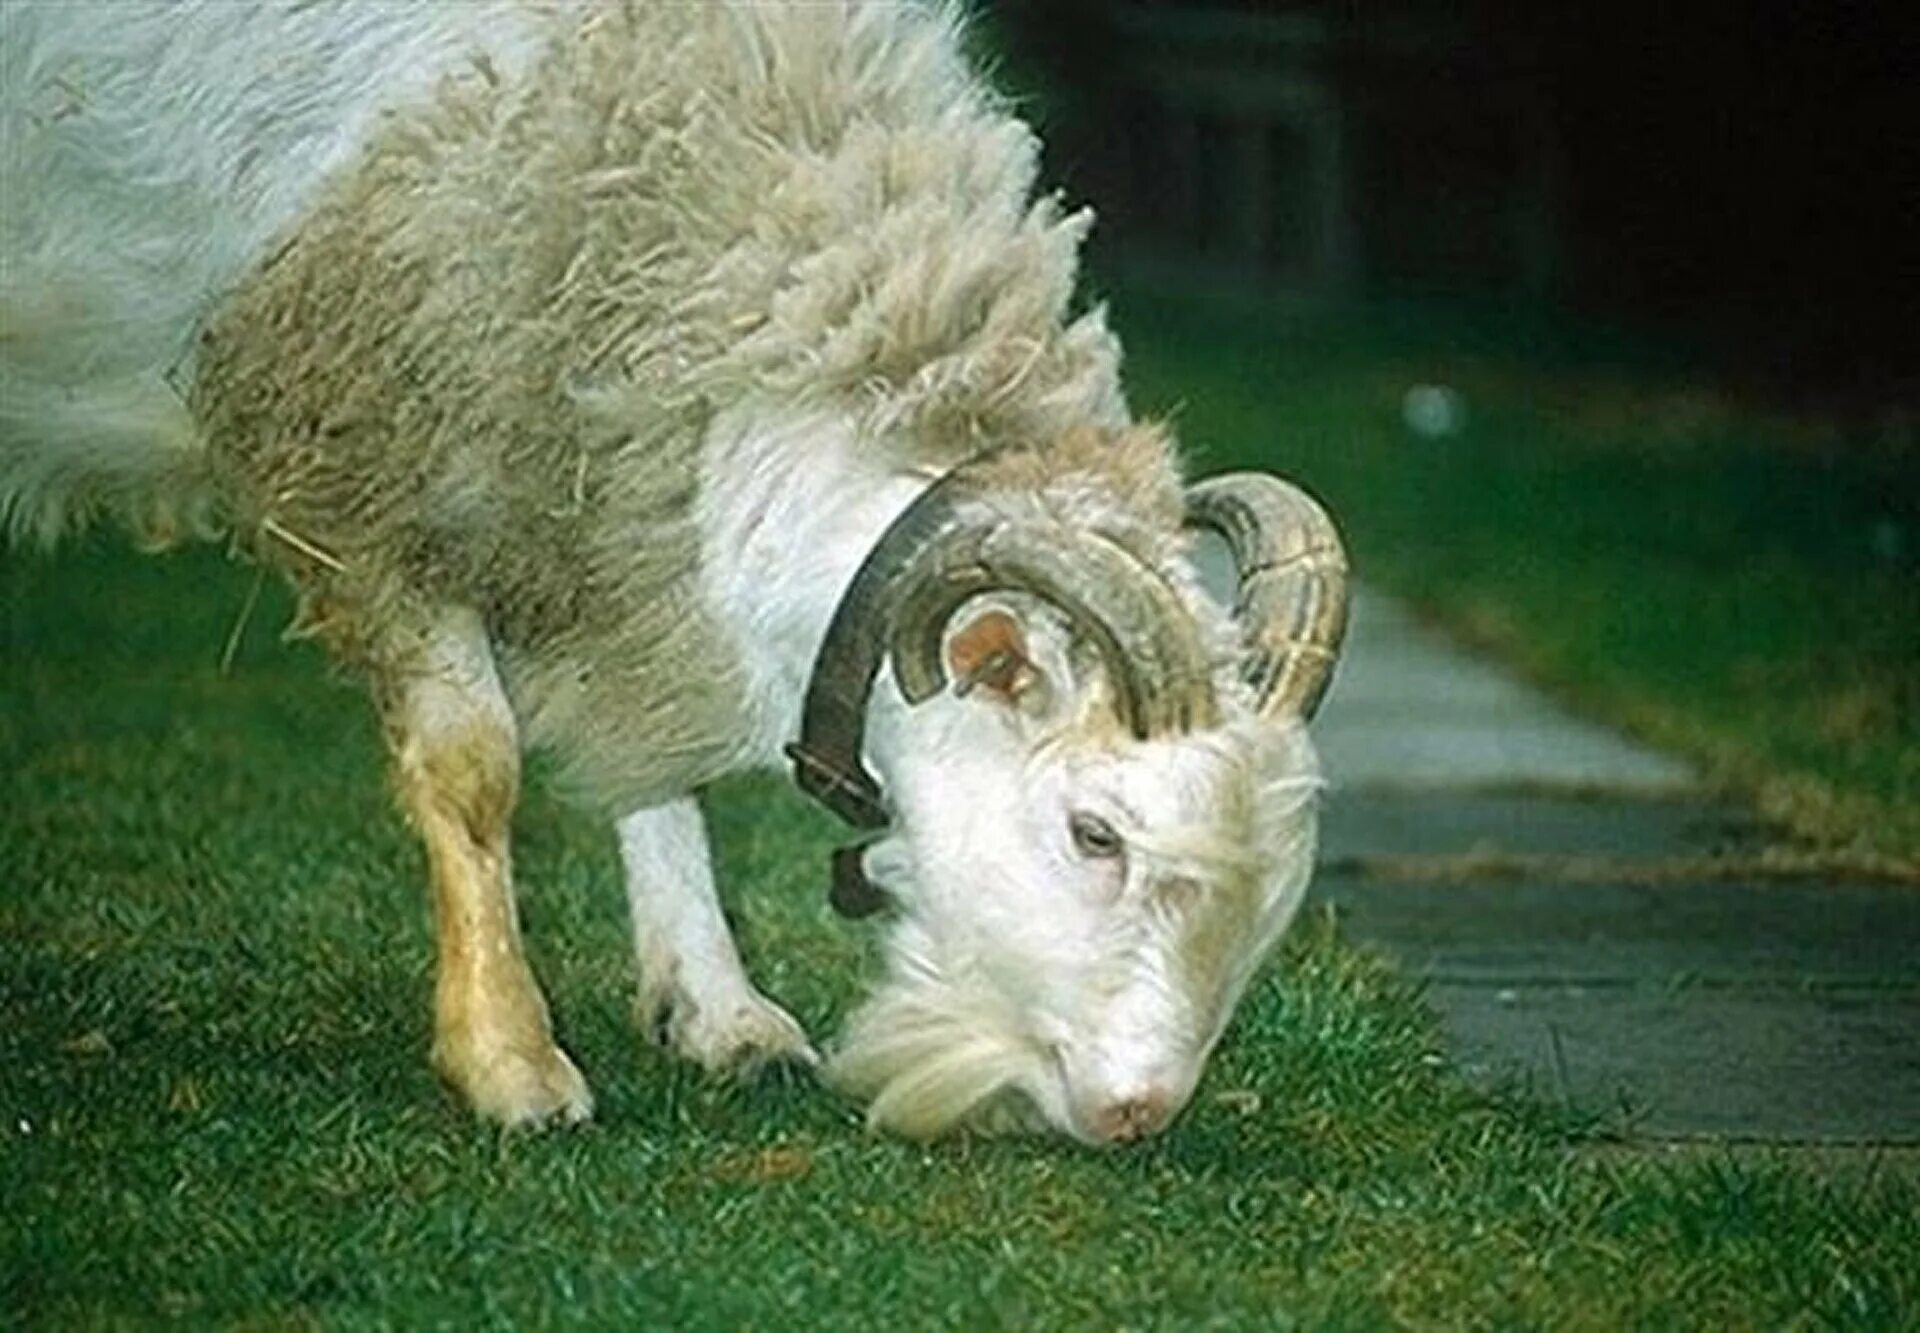 БАЗЛ гибрид барана и козы. Овцекоза гибрид. Химера Овцекоза. Овцекоза гибрид БАЗЛ.